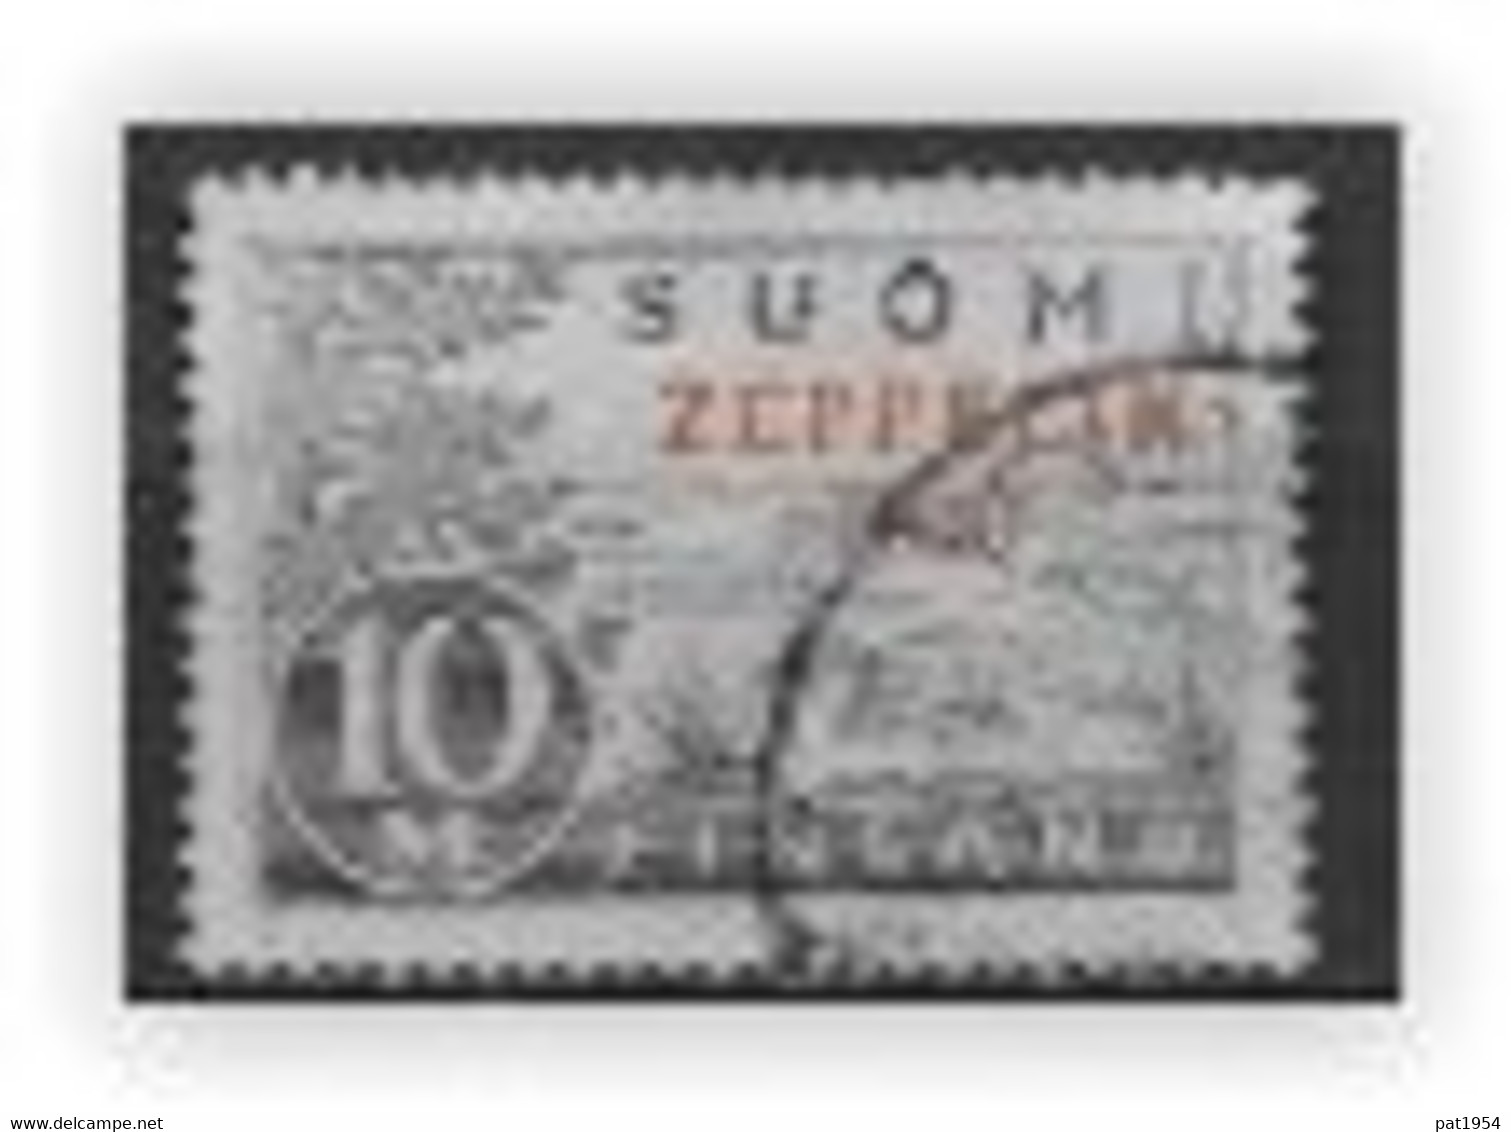 Finlande 1930 Poste Aérienne N°1 Oblitéré Surchargé Zeppelin - Oblitérés